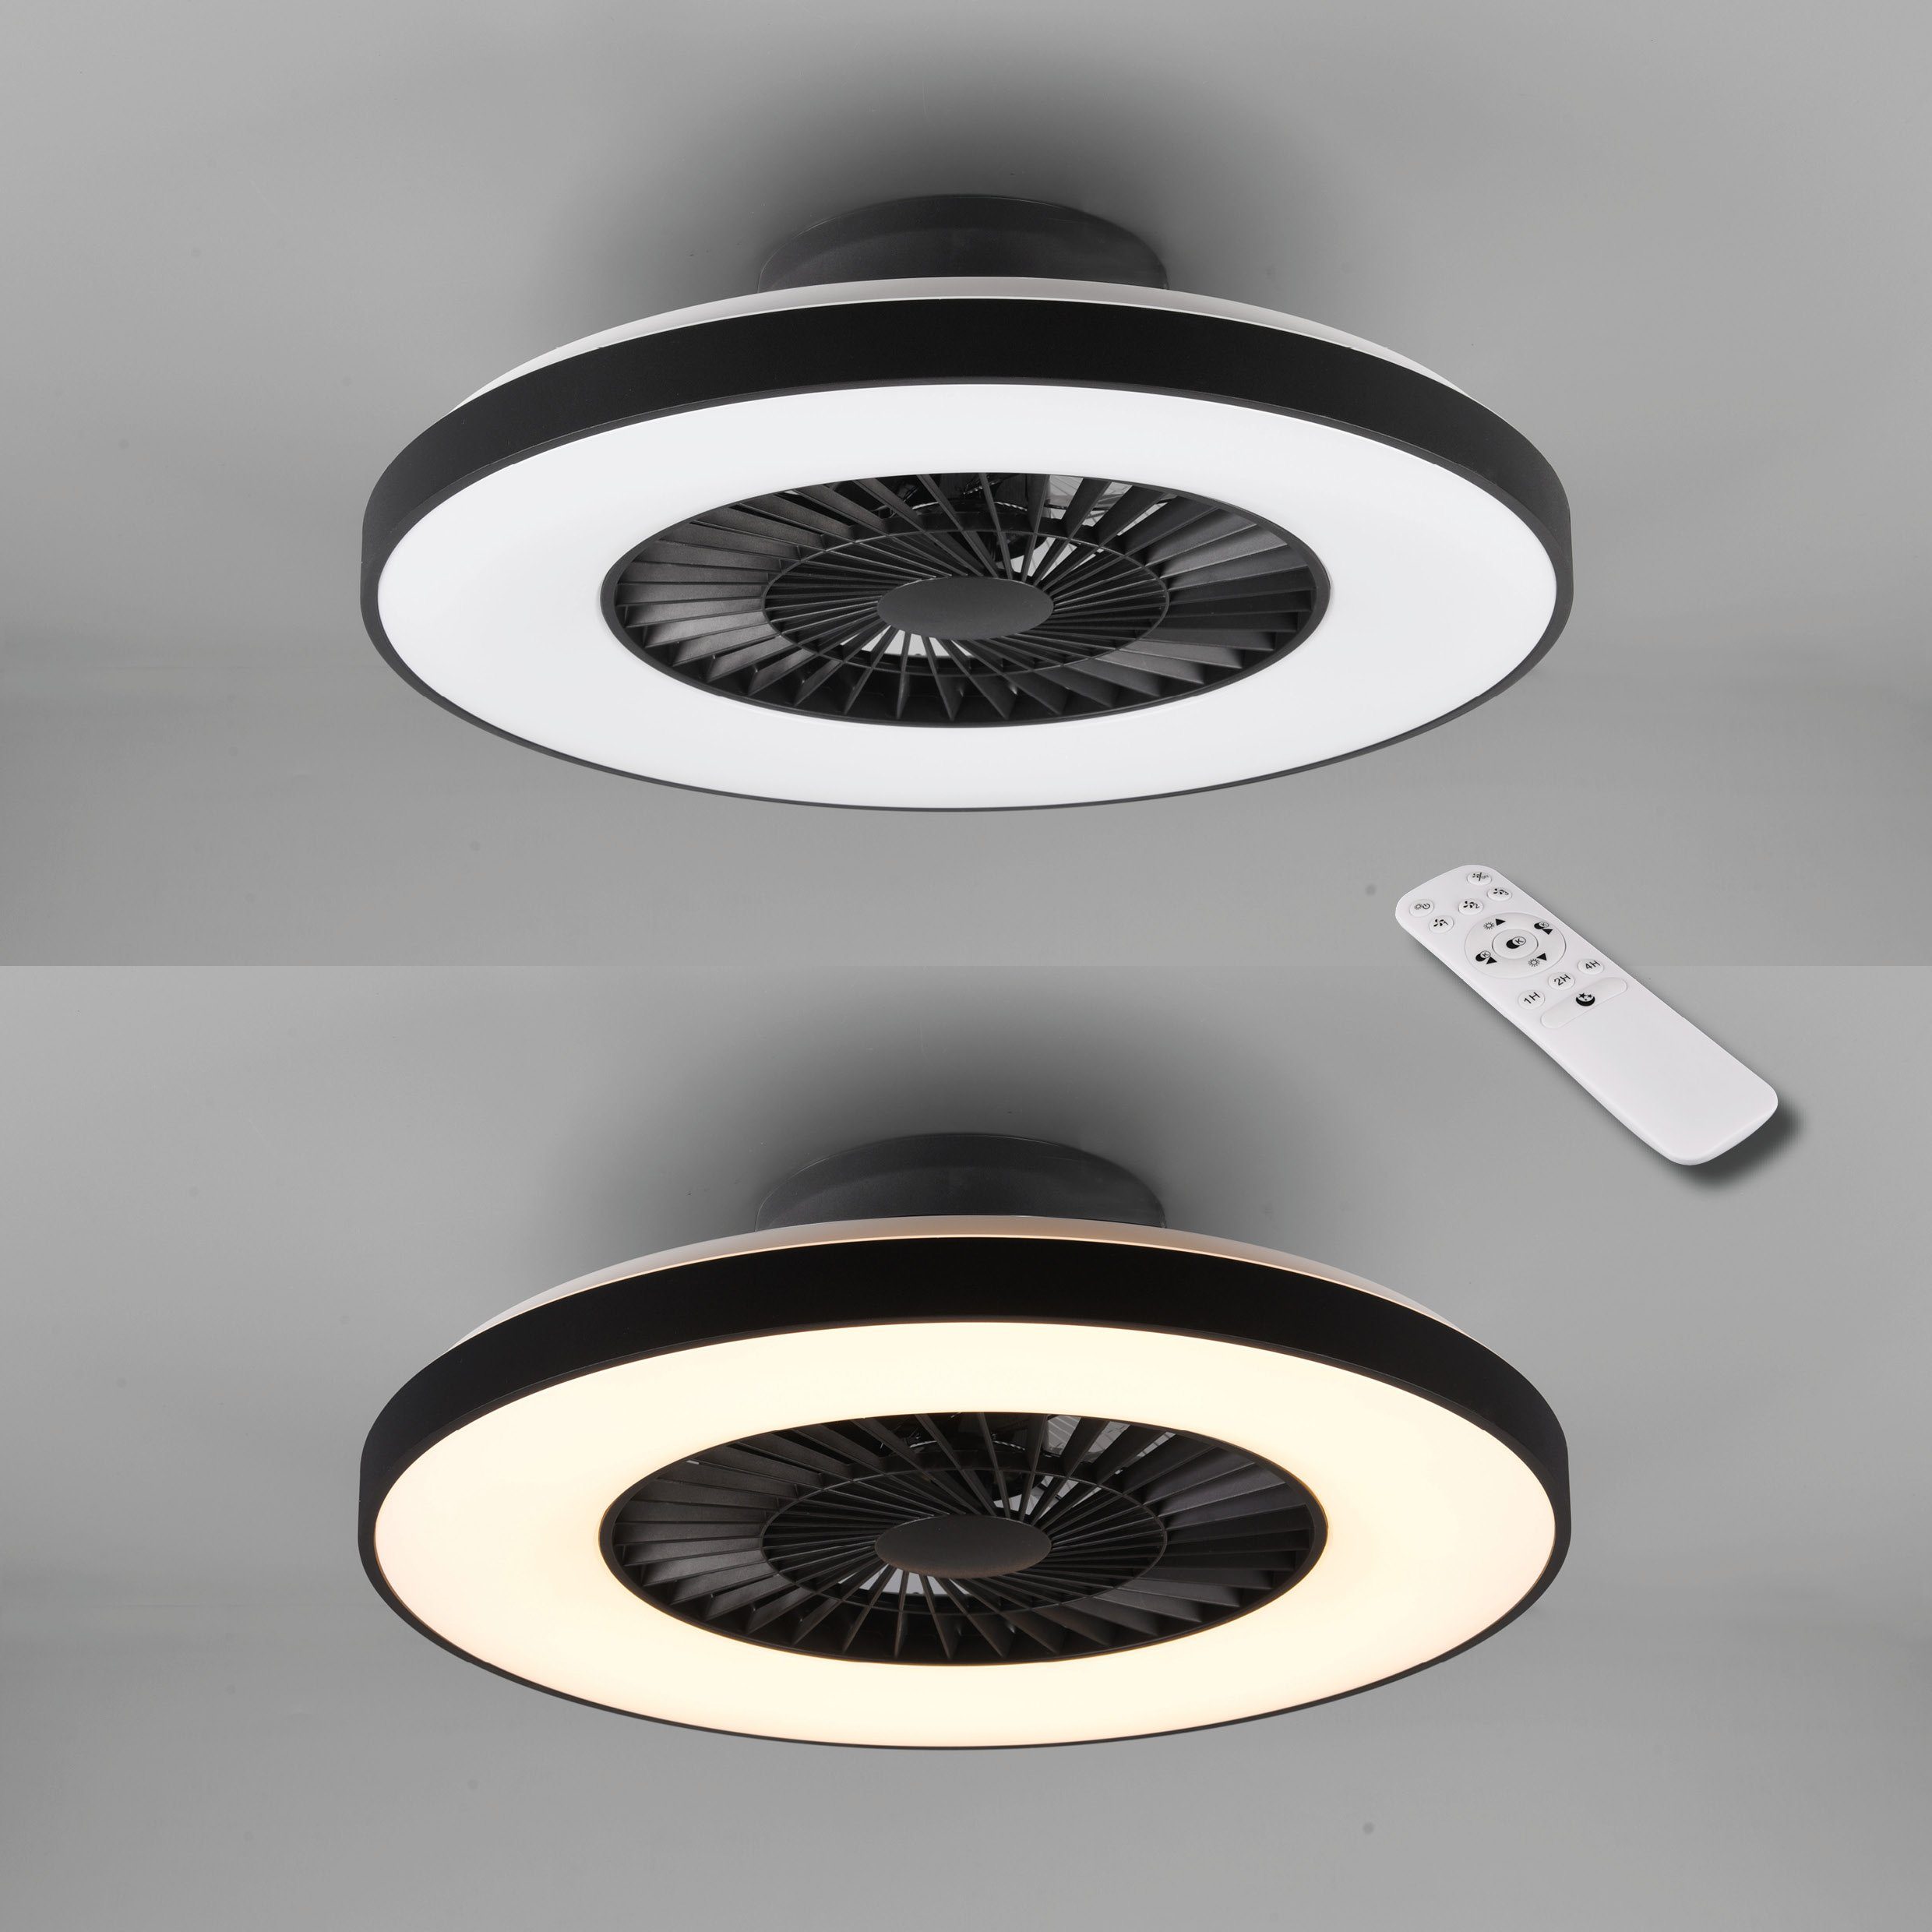 TRIO Leuchten Ventilatorfunktion, Fernbedienung., Deckenleuchte LED getrennt integriert, Neutralweiß, mit LED schaltbar Leuchte/ fest Timerfunktion, Ventilator, Ventilator Halmstad